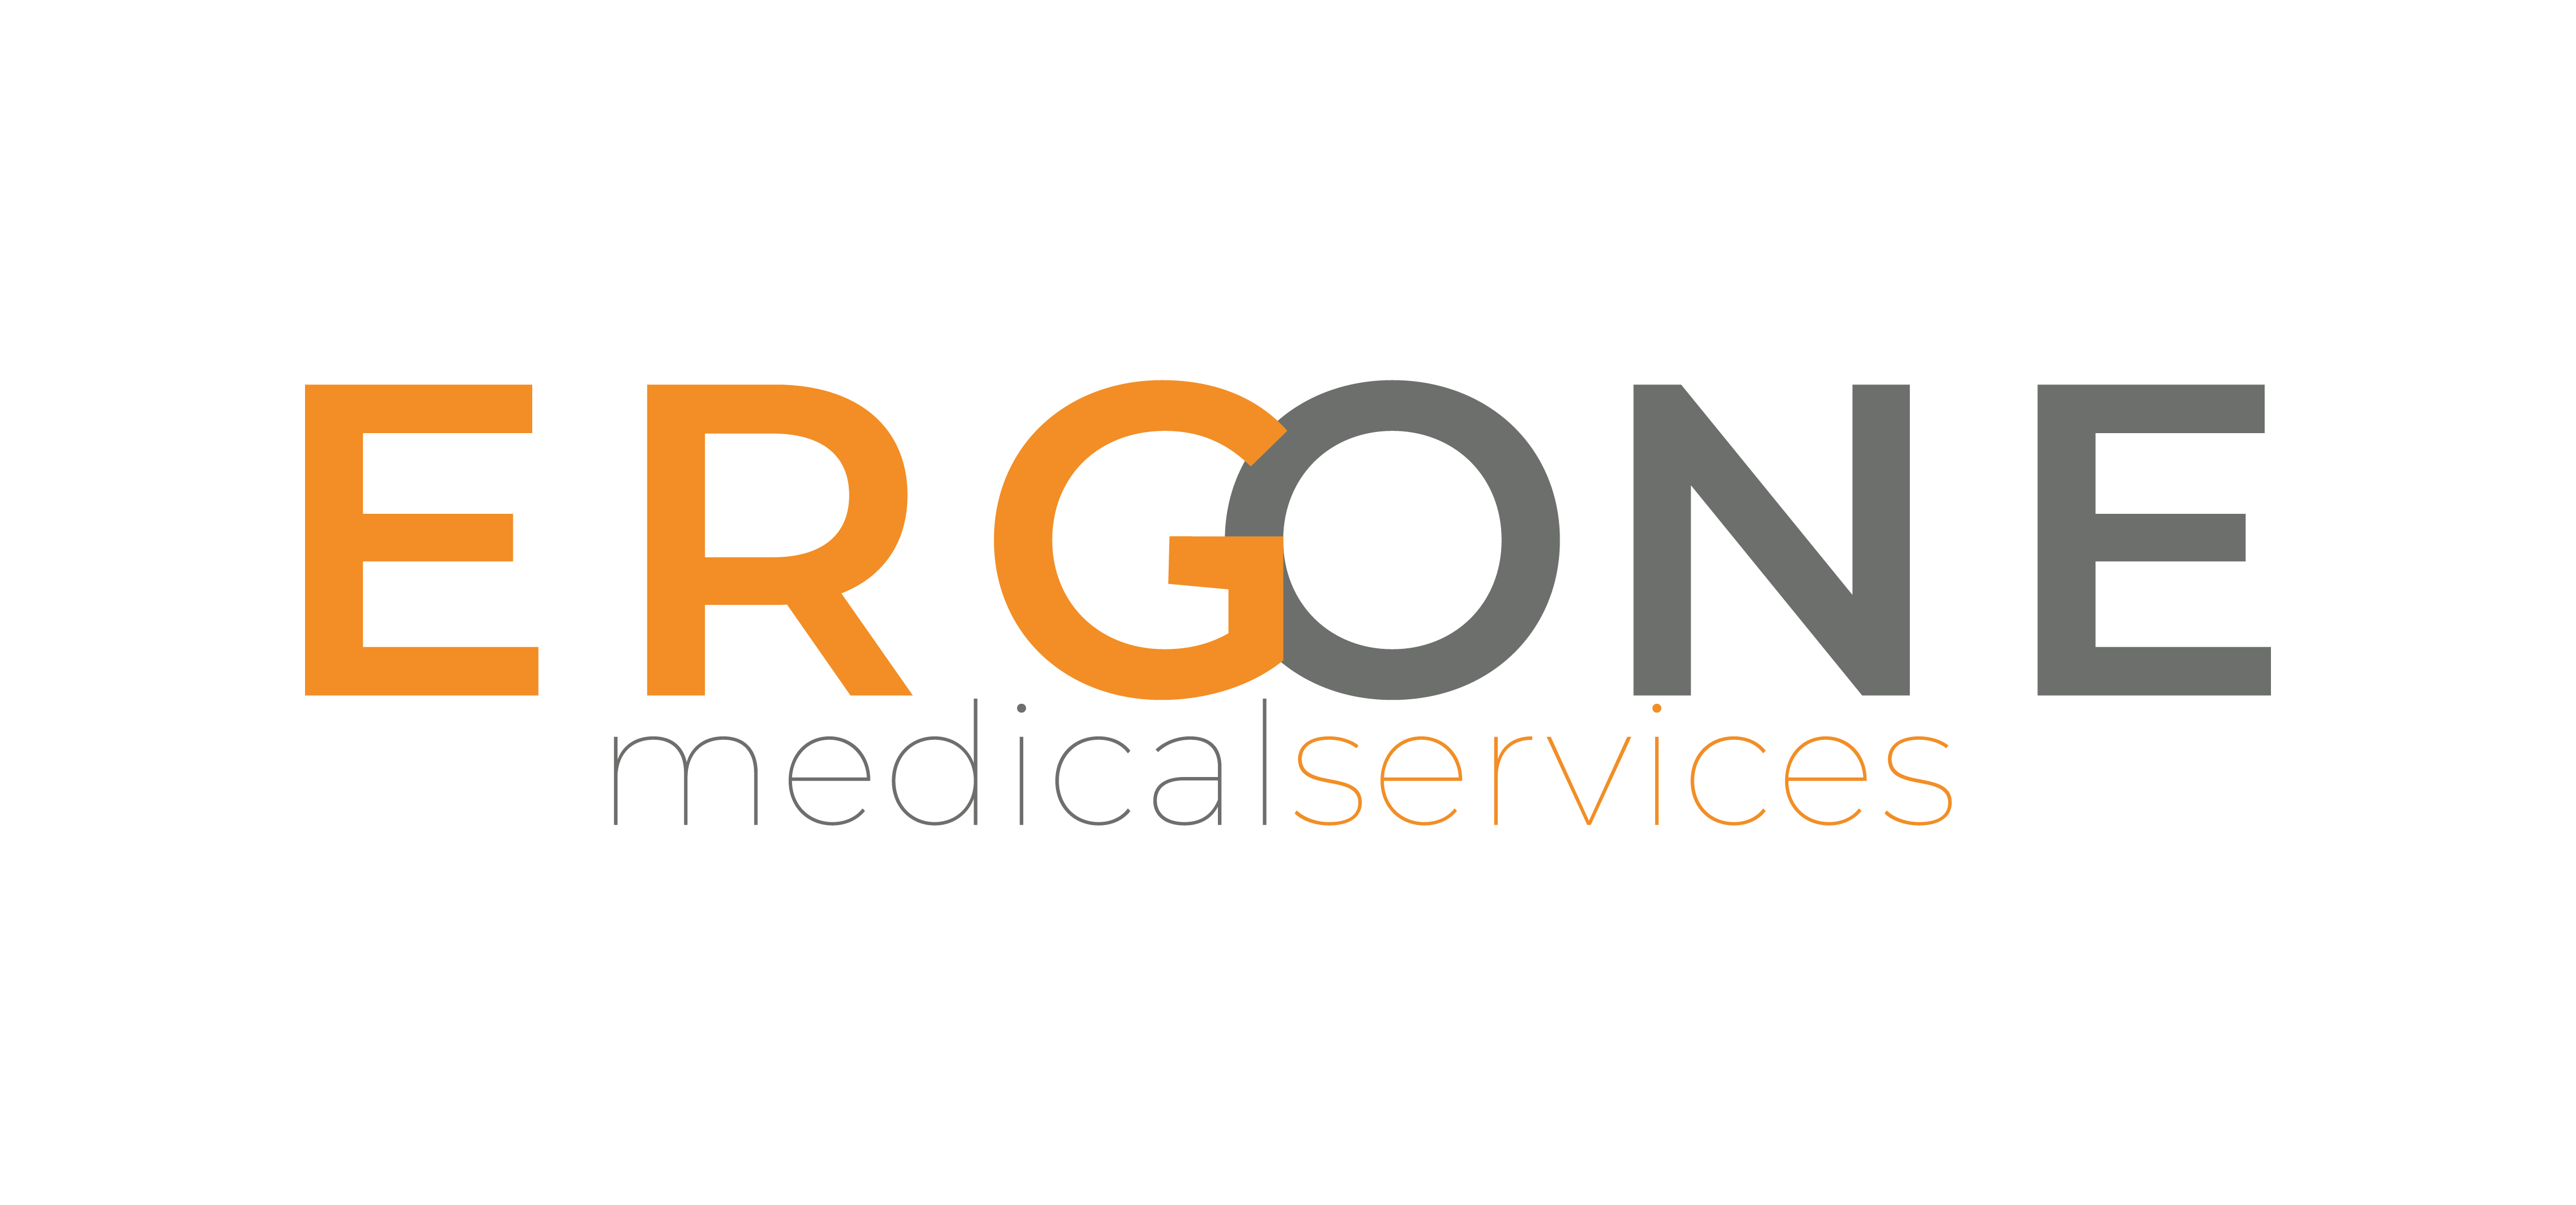 ERGONE medical services